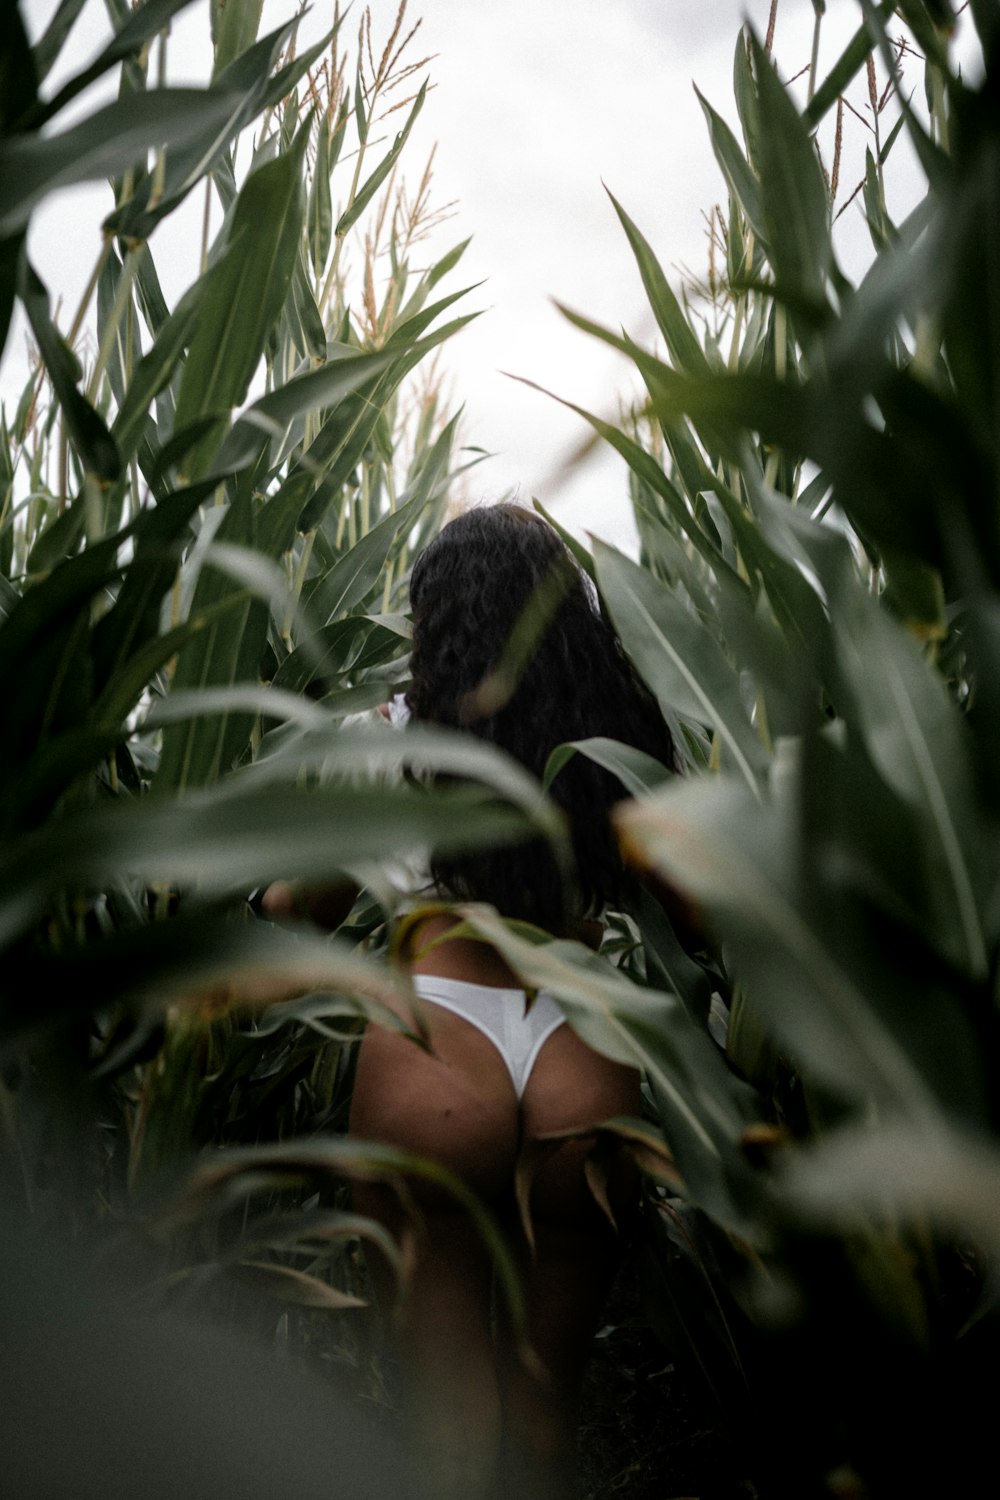 donna in bikini in bianco e nero in piedi in mezzo alle piante verdi durante il giorno